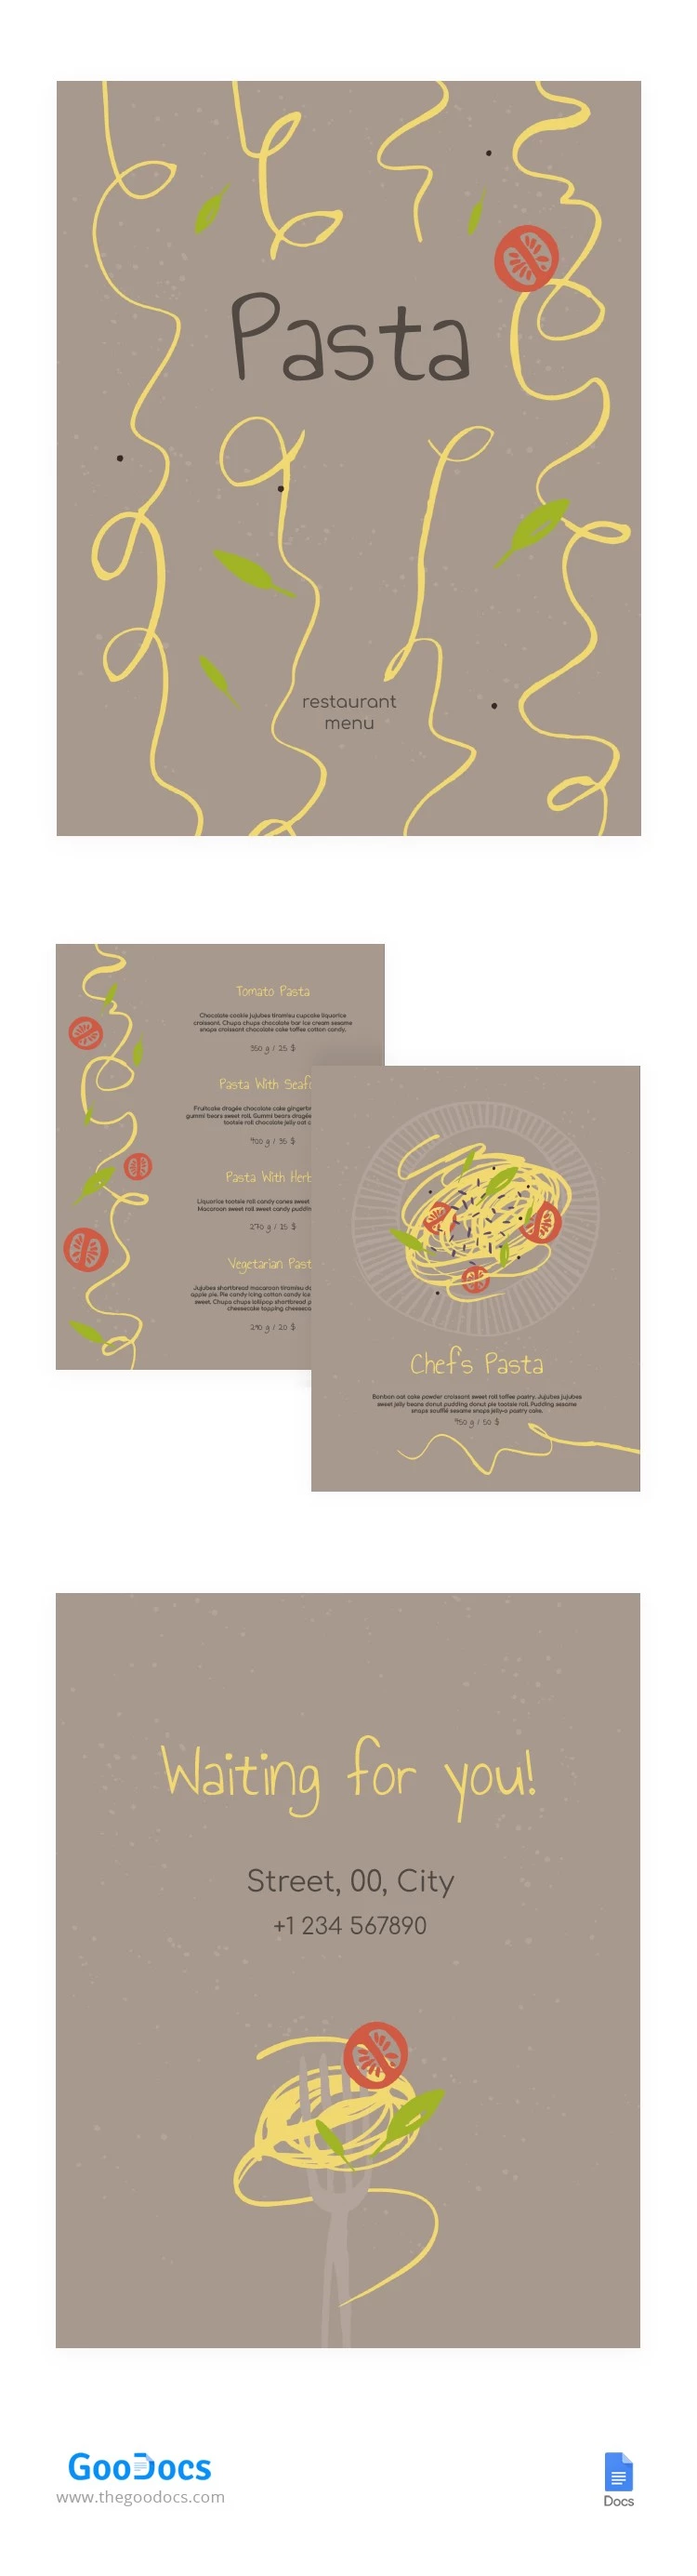 Menú de restaurante de pasta - free Google Docs Template - 10064020